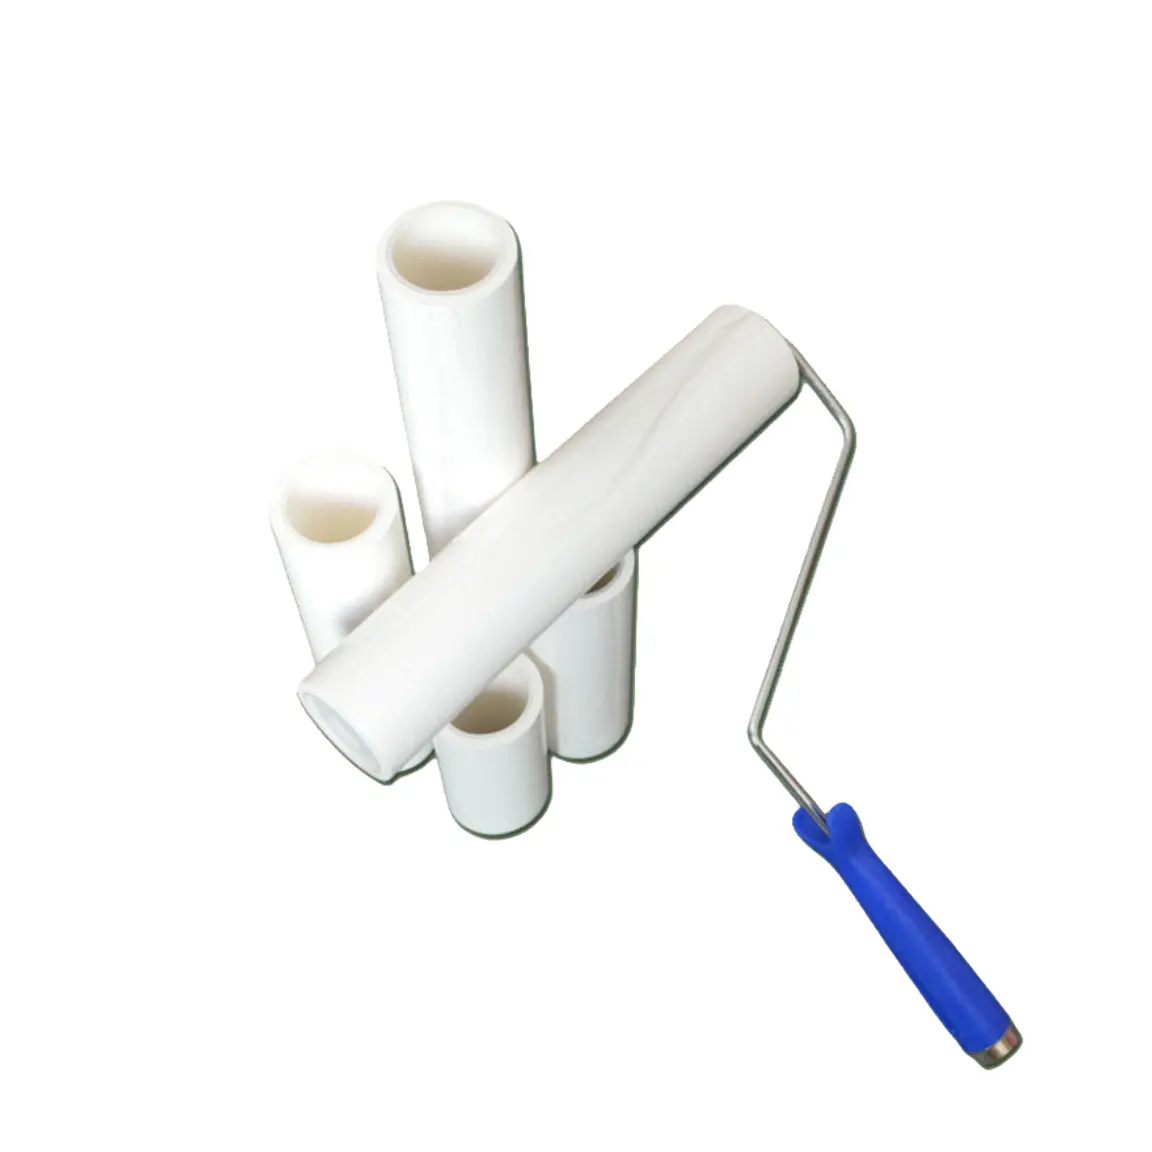 Tinggi Tack debu putih biru perekat pakaian serat membersihkan tongkat perekat PE bersih ruangan menangani serat Roller